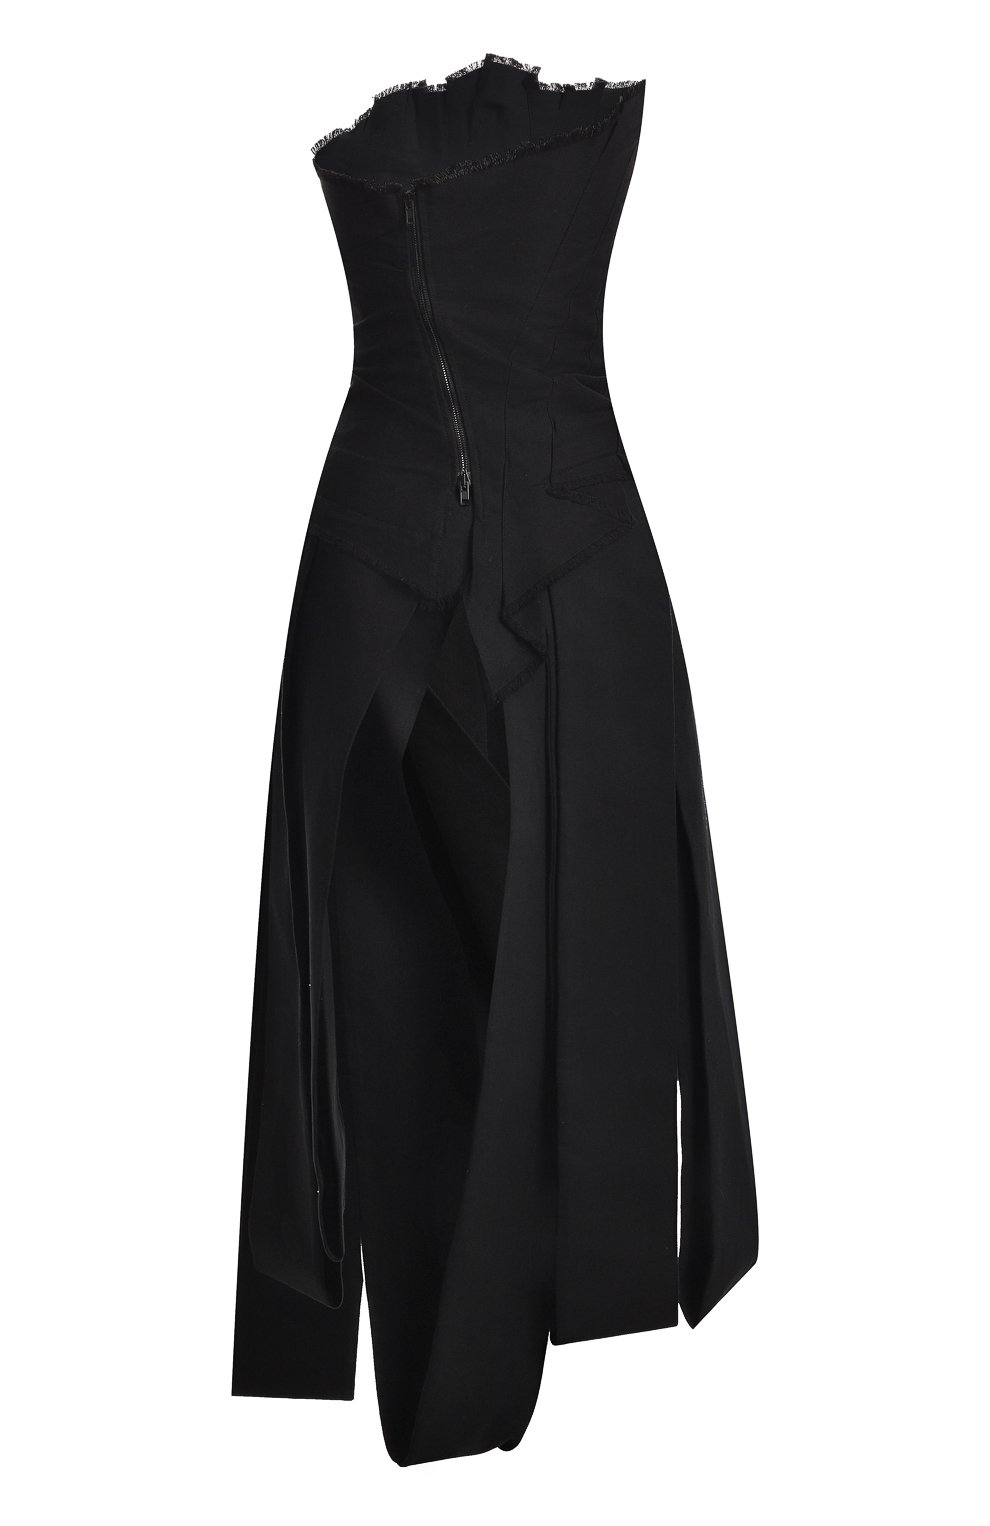 Джинсовое платье | Isabel Benenato | Чёрный - 2